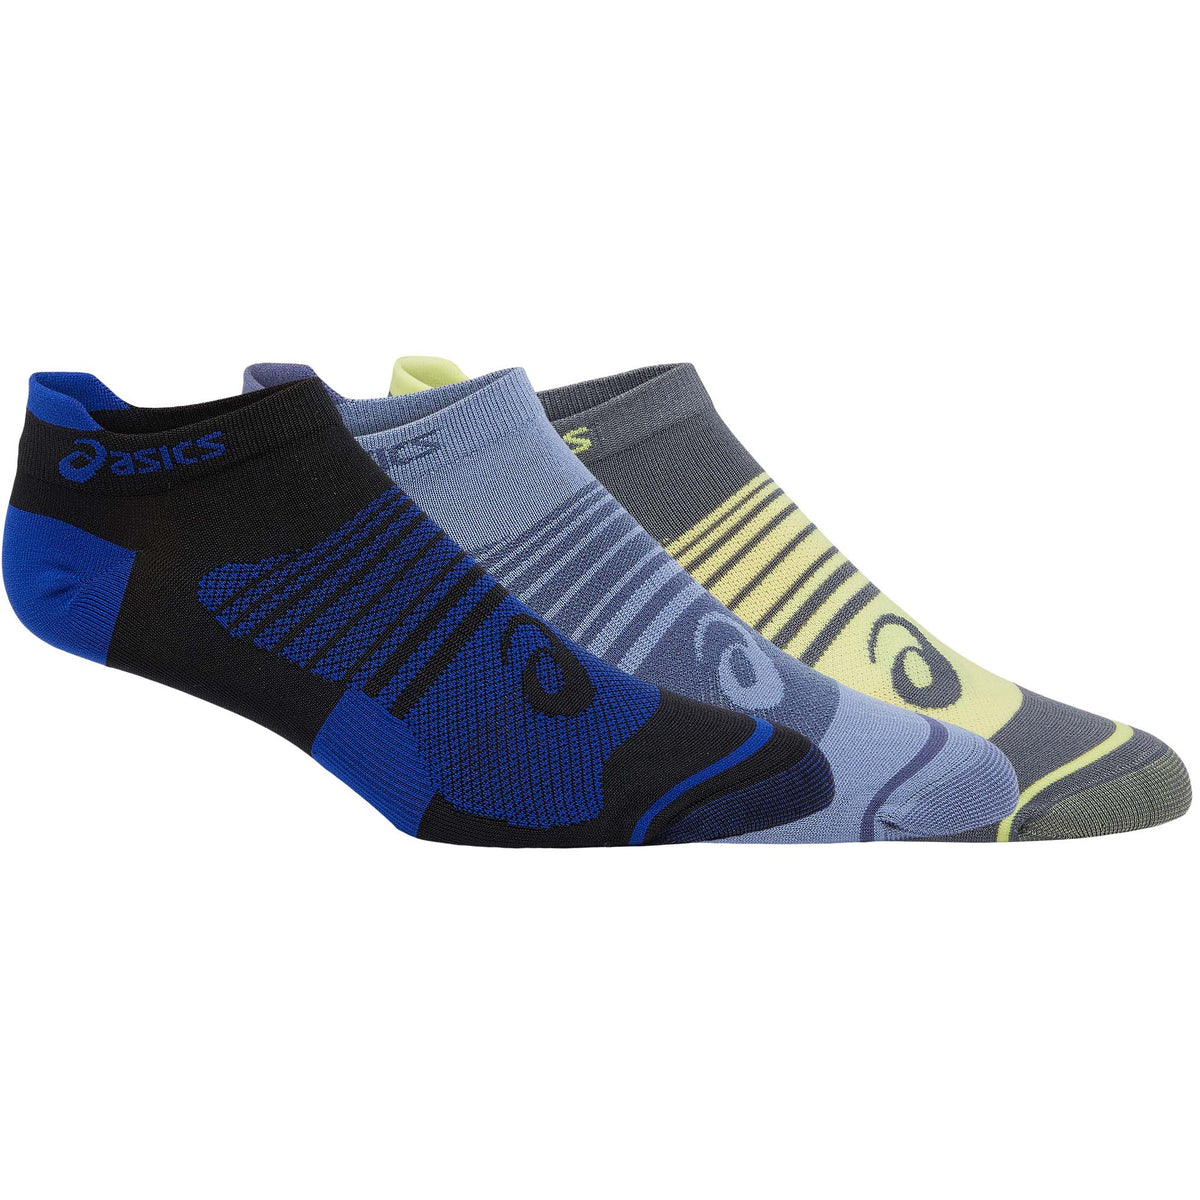 ASICS Quick Lyte Plus chaussettes de course à pied homme (paquet de 3) bleu orage jaune brillant